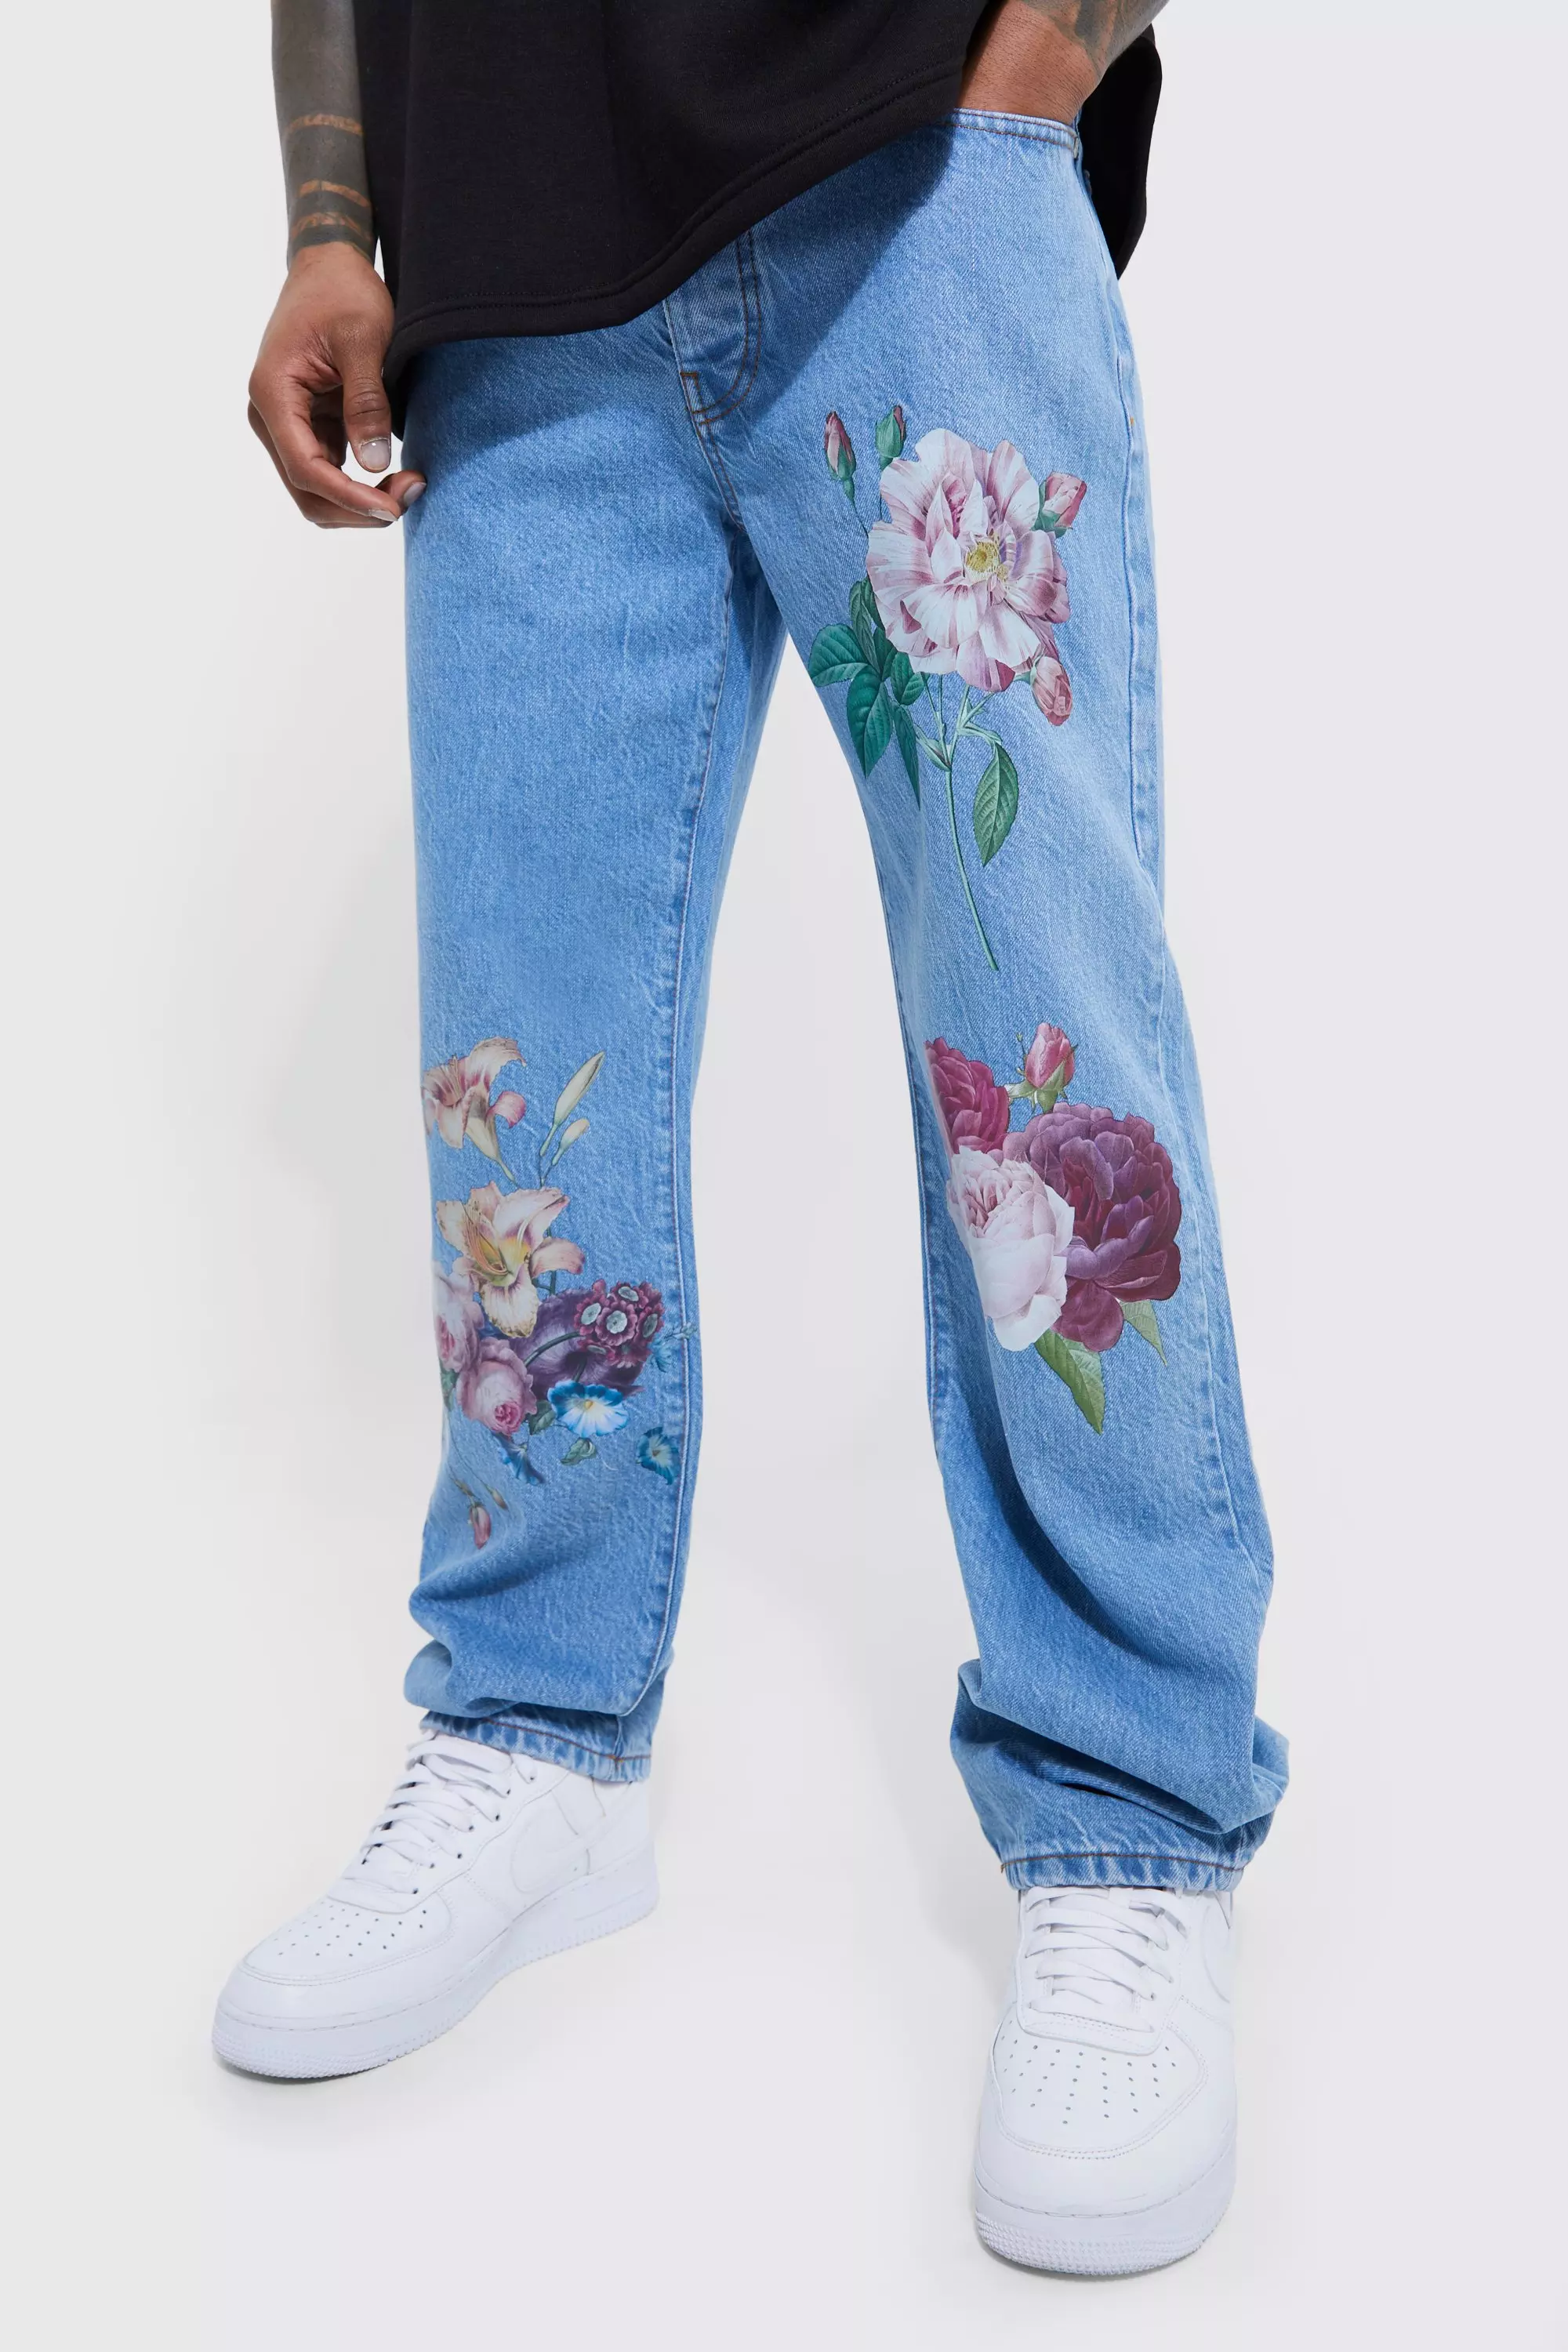 Flower Print Full Length Jeans For Men And Women Stylish